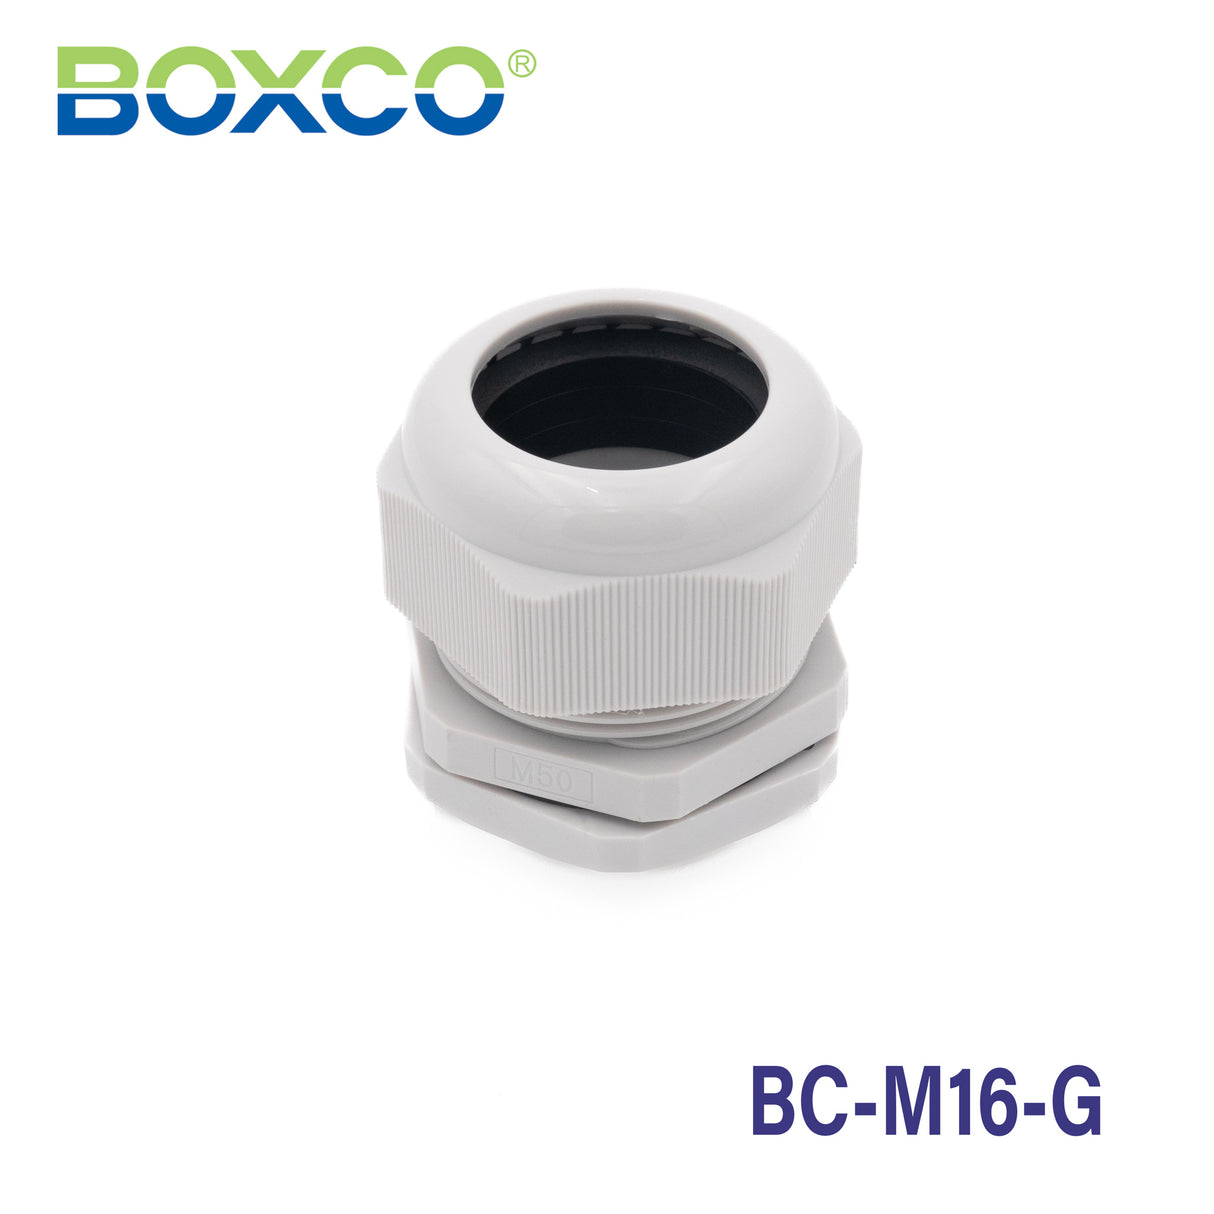 Boxco Plastic Cable Gland BC-M16-G